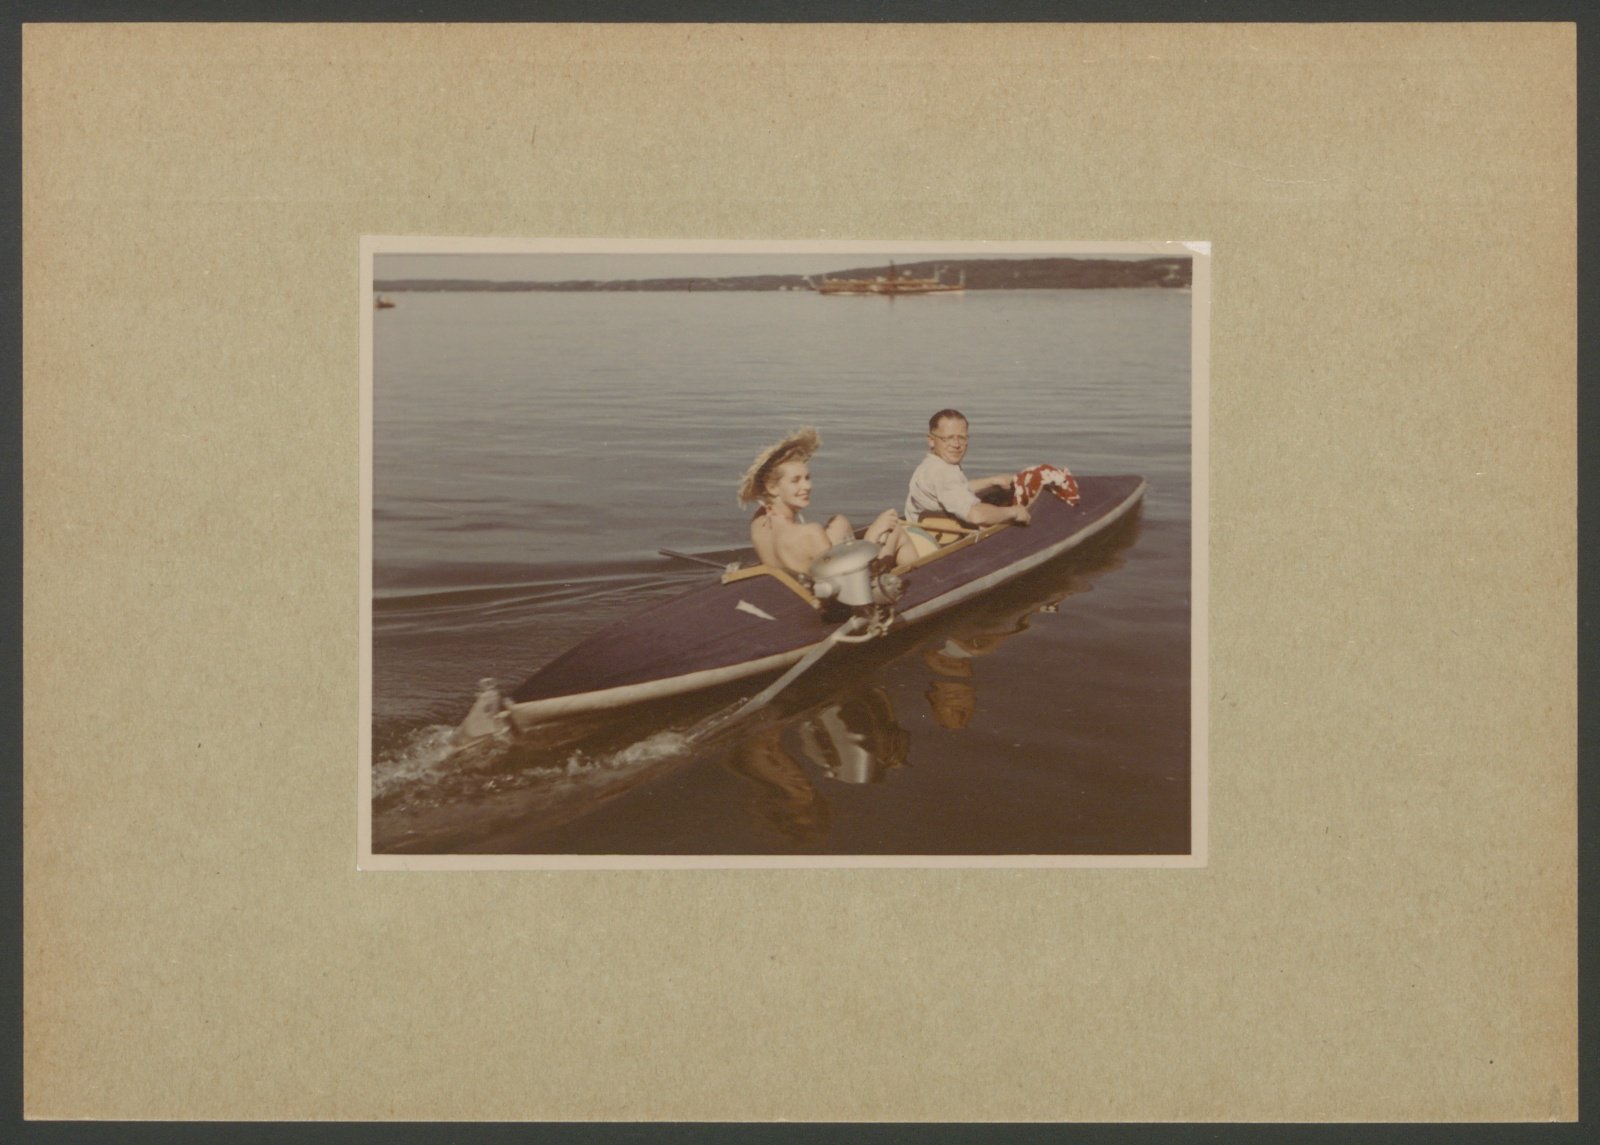 Fotografie: Zwei Personen in einem motorisierten Boot, vermutlich Delphin (Stiftung Deutsches Technikmuseum Berlin CC0)